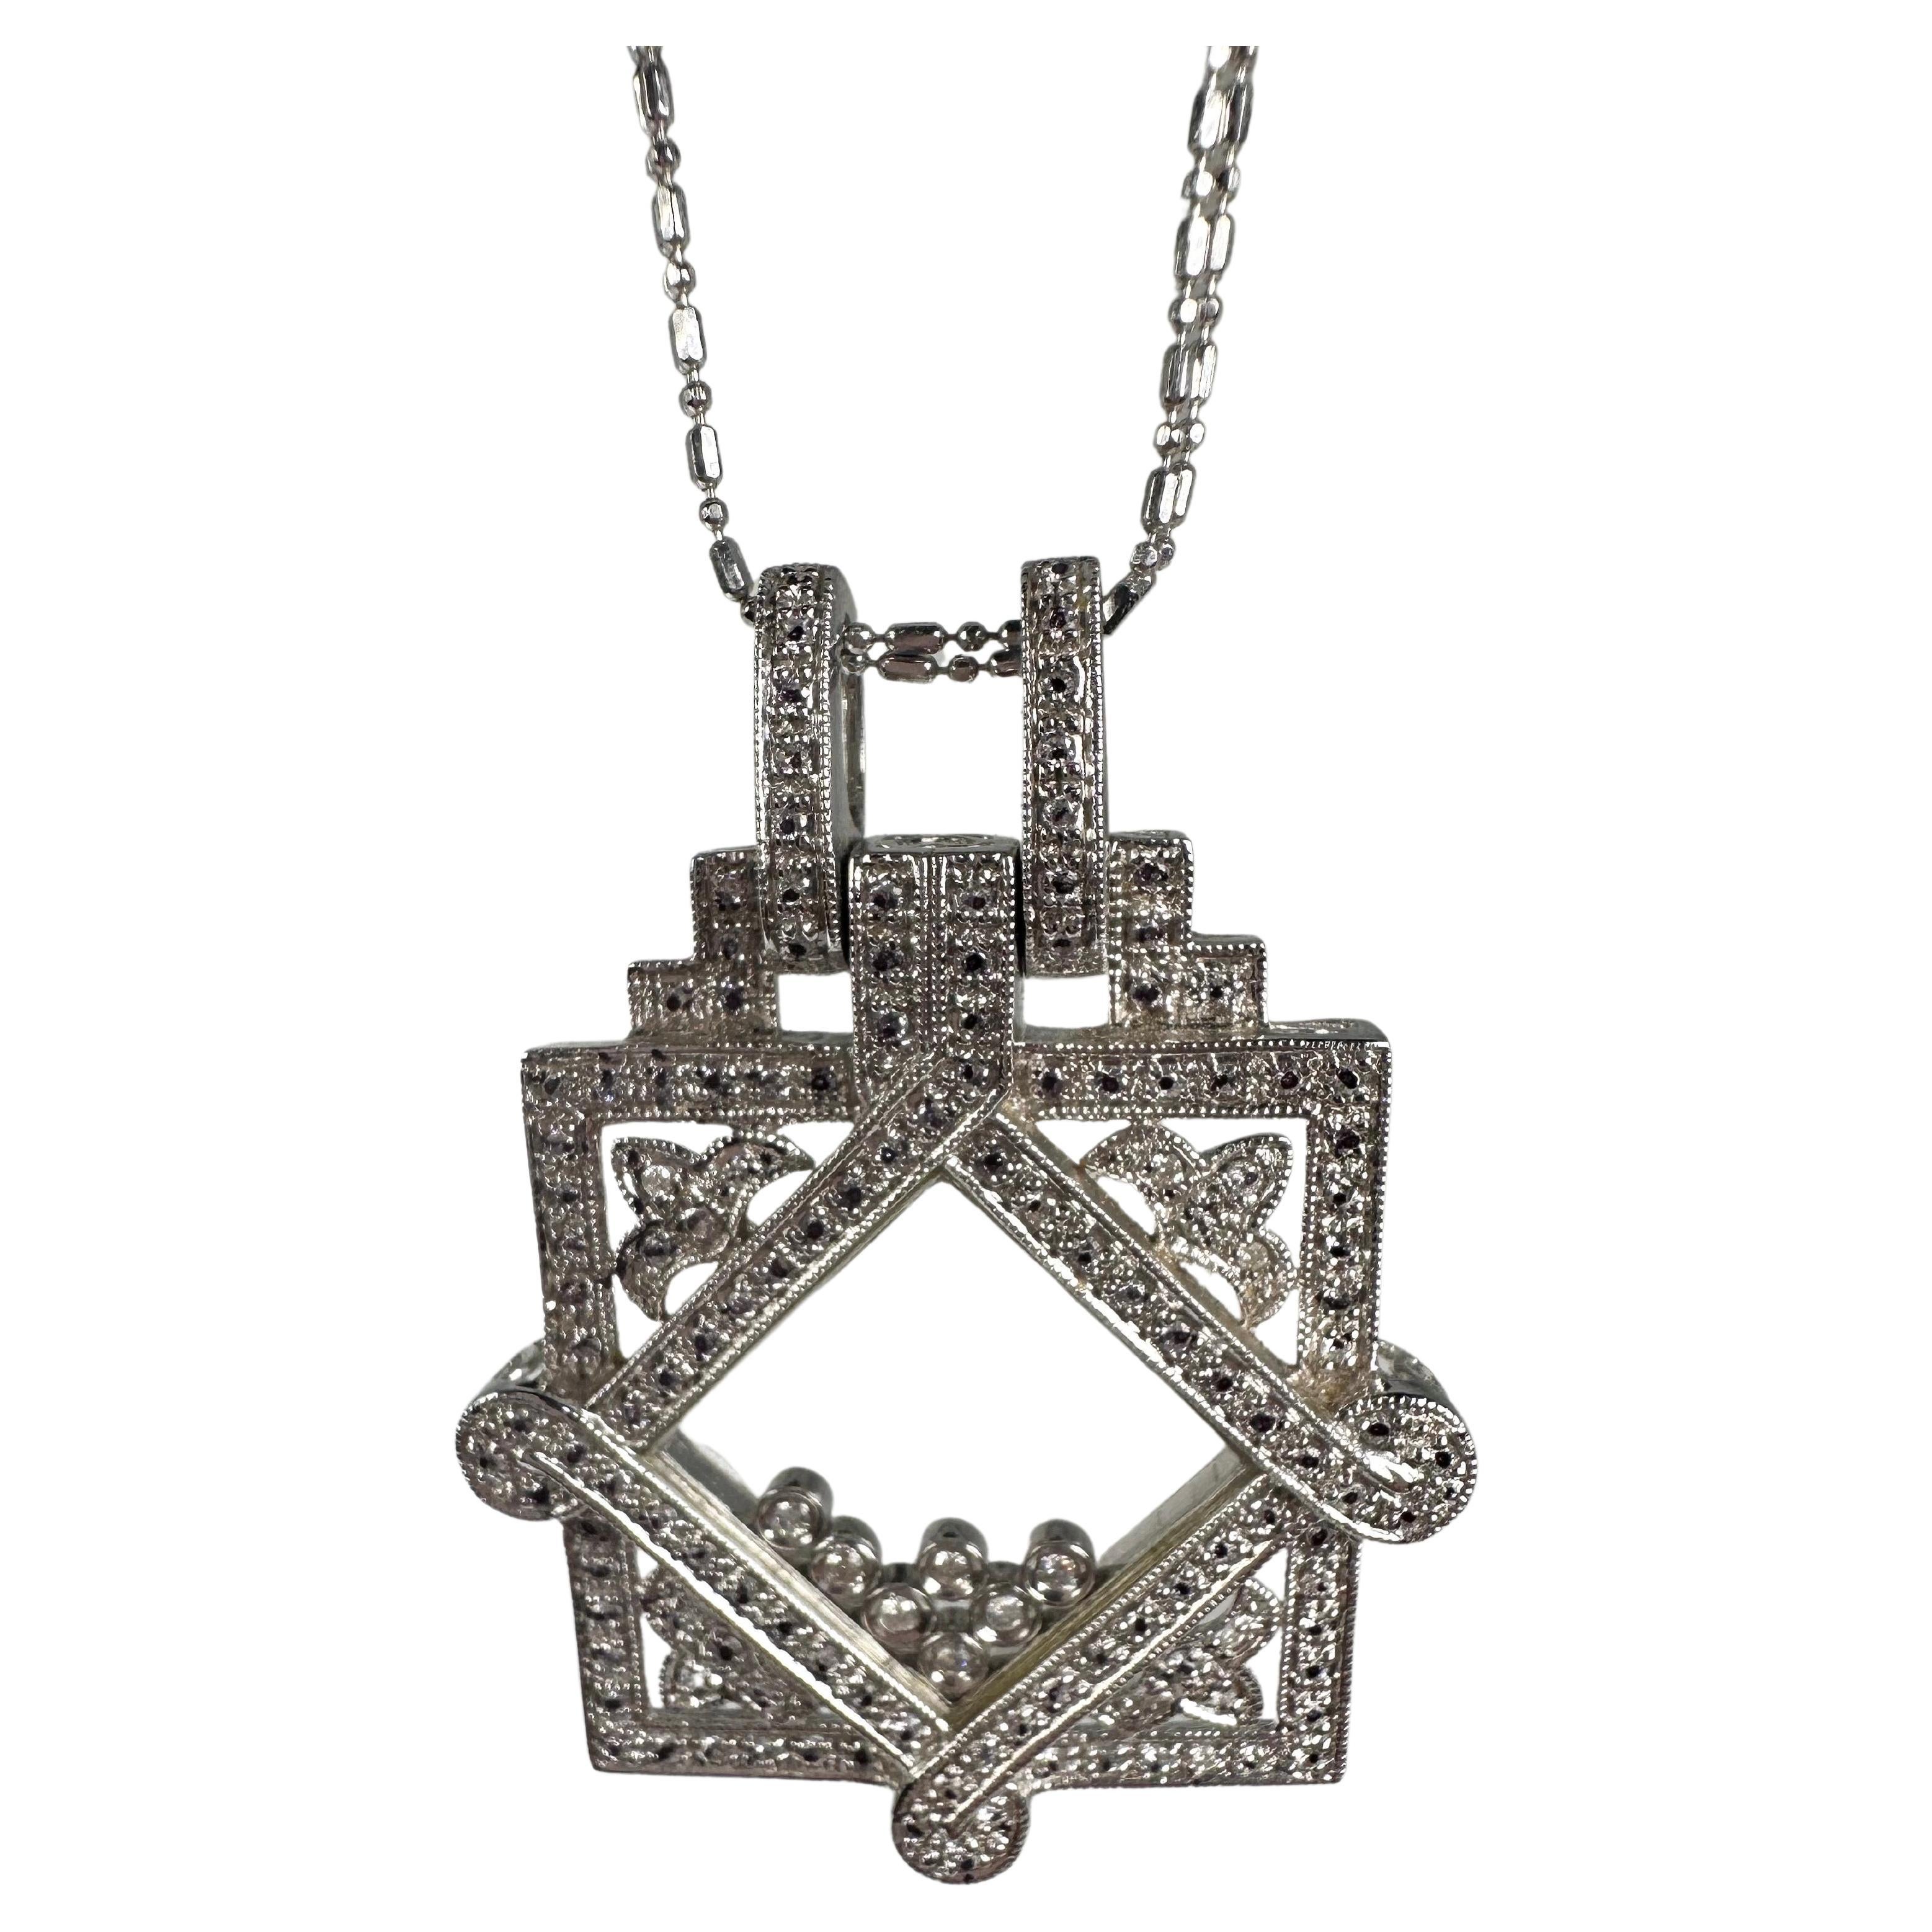 Floating diamonds pendant necklace 14KT1.18ct diamond pendant necklace 23" LONG For Sale